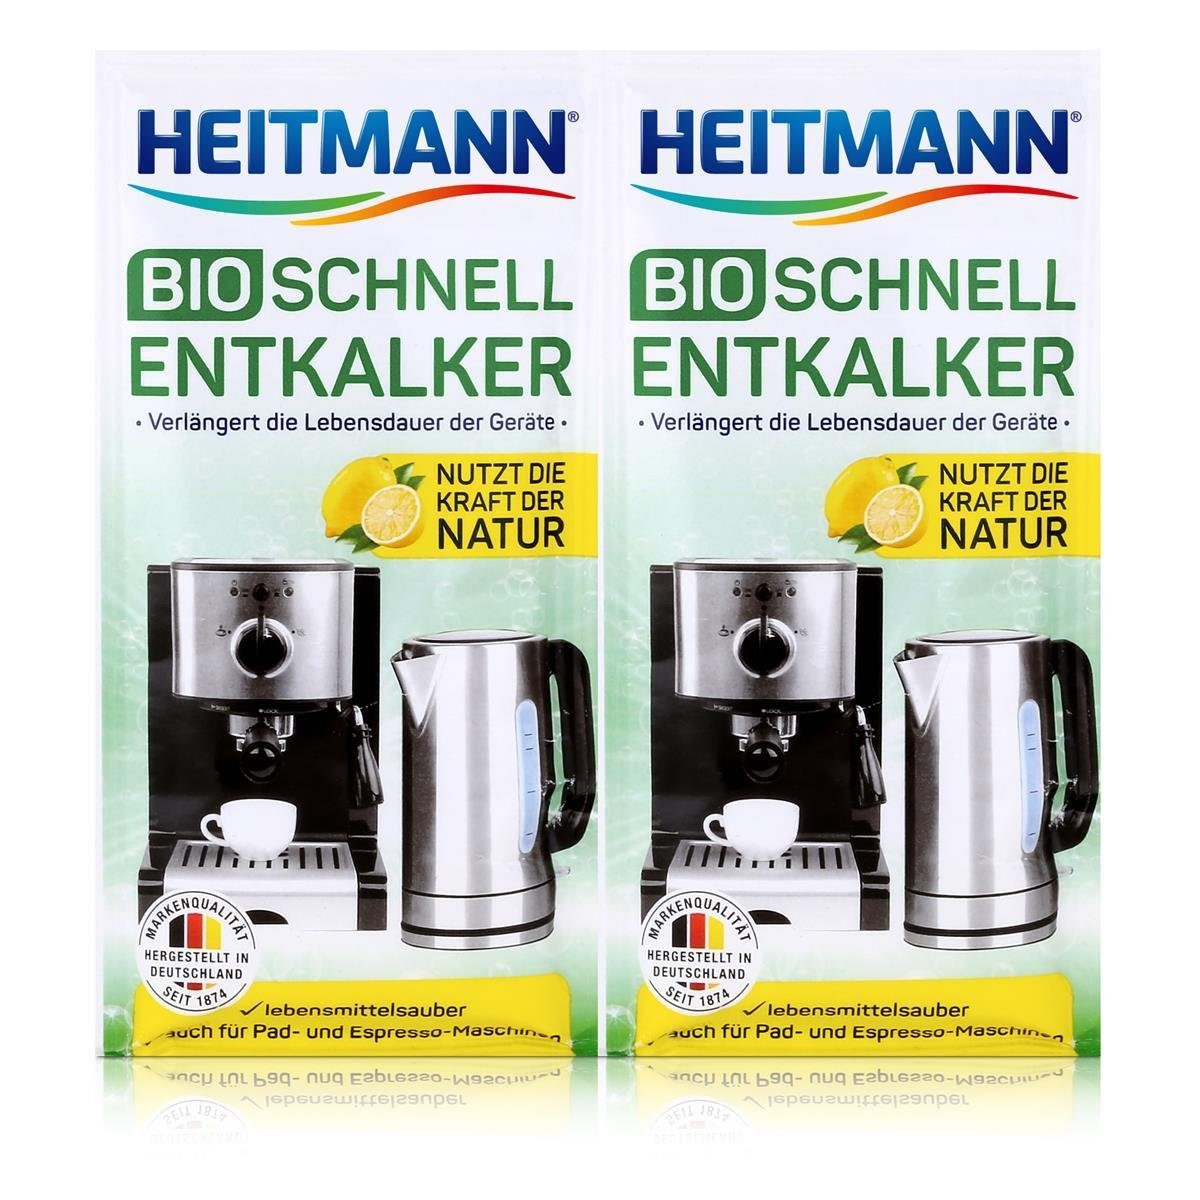 HEITMANN Heitmann Schnell-Entkalker - 2x25g Universalentkalker Bio Natürlicher Entkalker